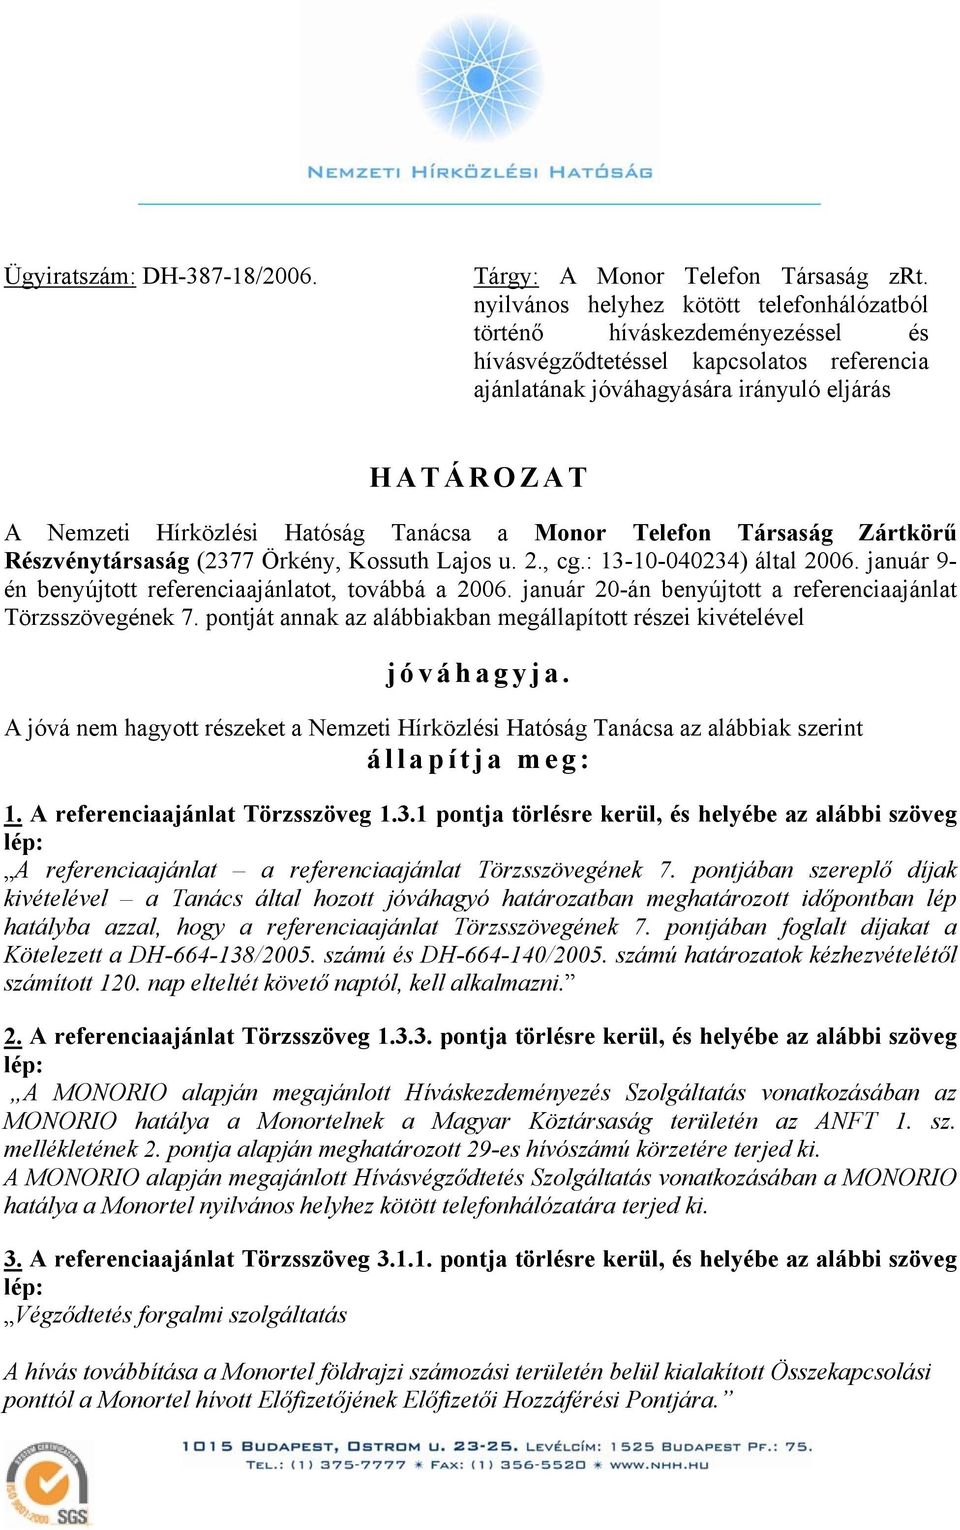 Hatóság Tanácsa a Monor Telefon Társaság Zártkörű Részvénytársaság (2377 Örkény, Kossuth Lajos u. 2., cg.: 13-10-040234) által 2006. január 9- én benyújtott referenciaajánlatot, továbbá a 2006.